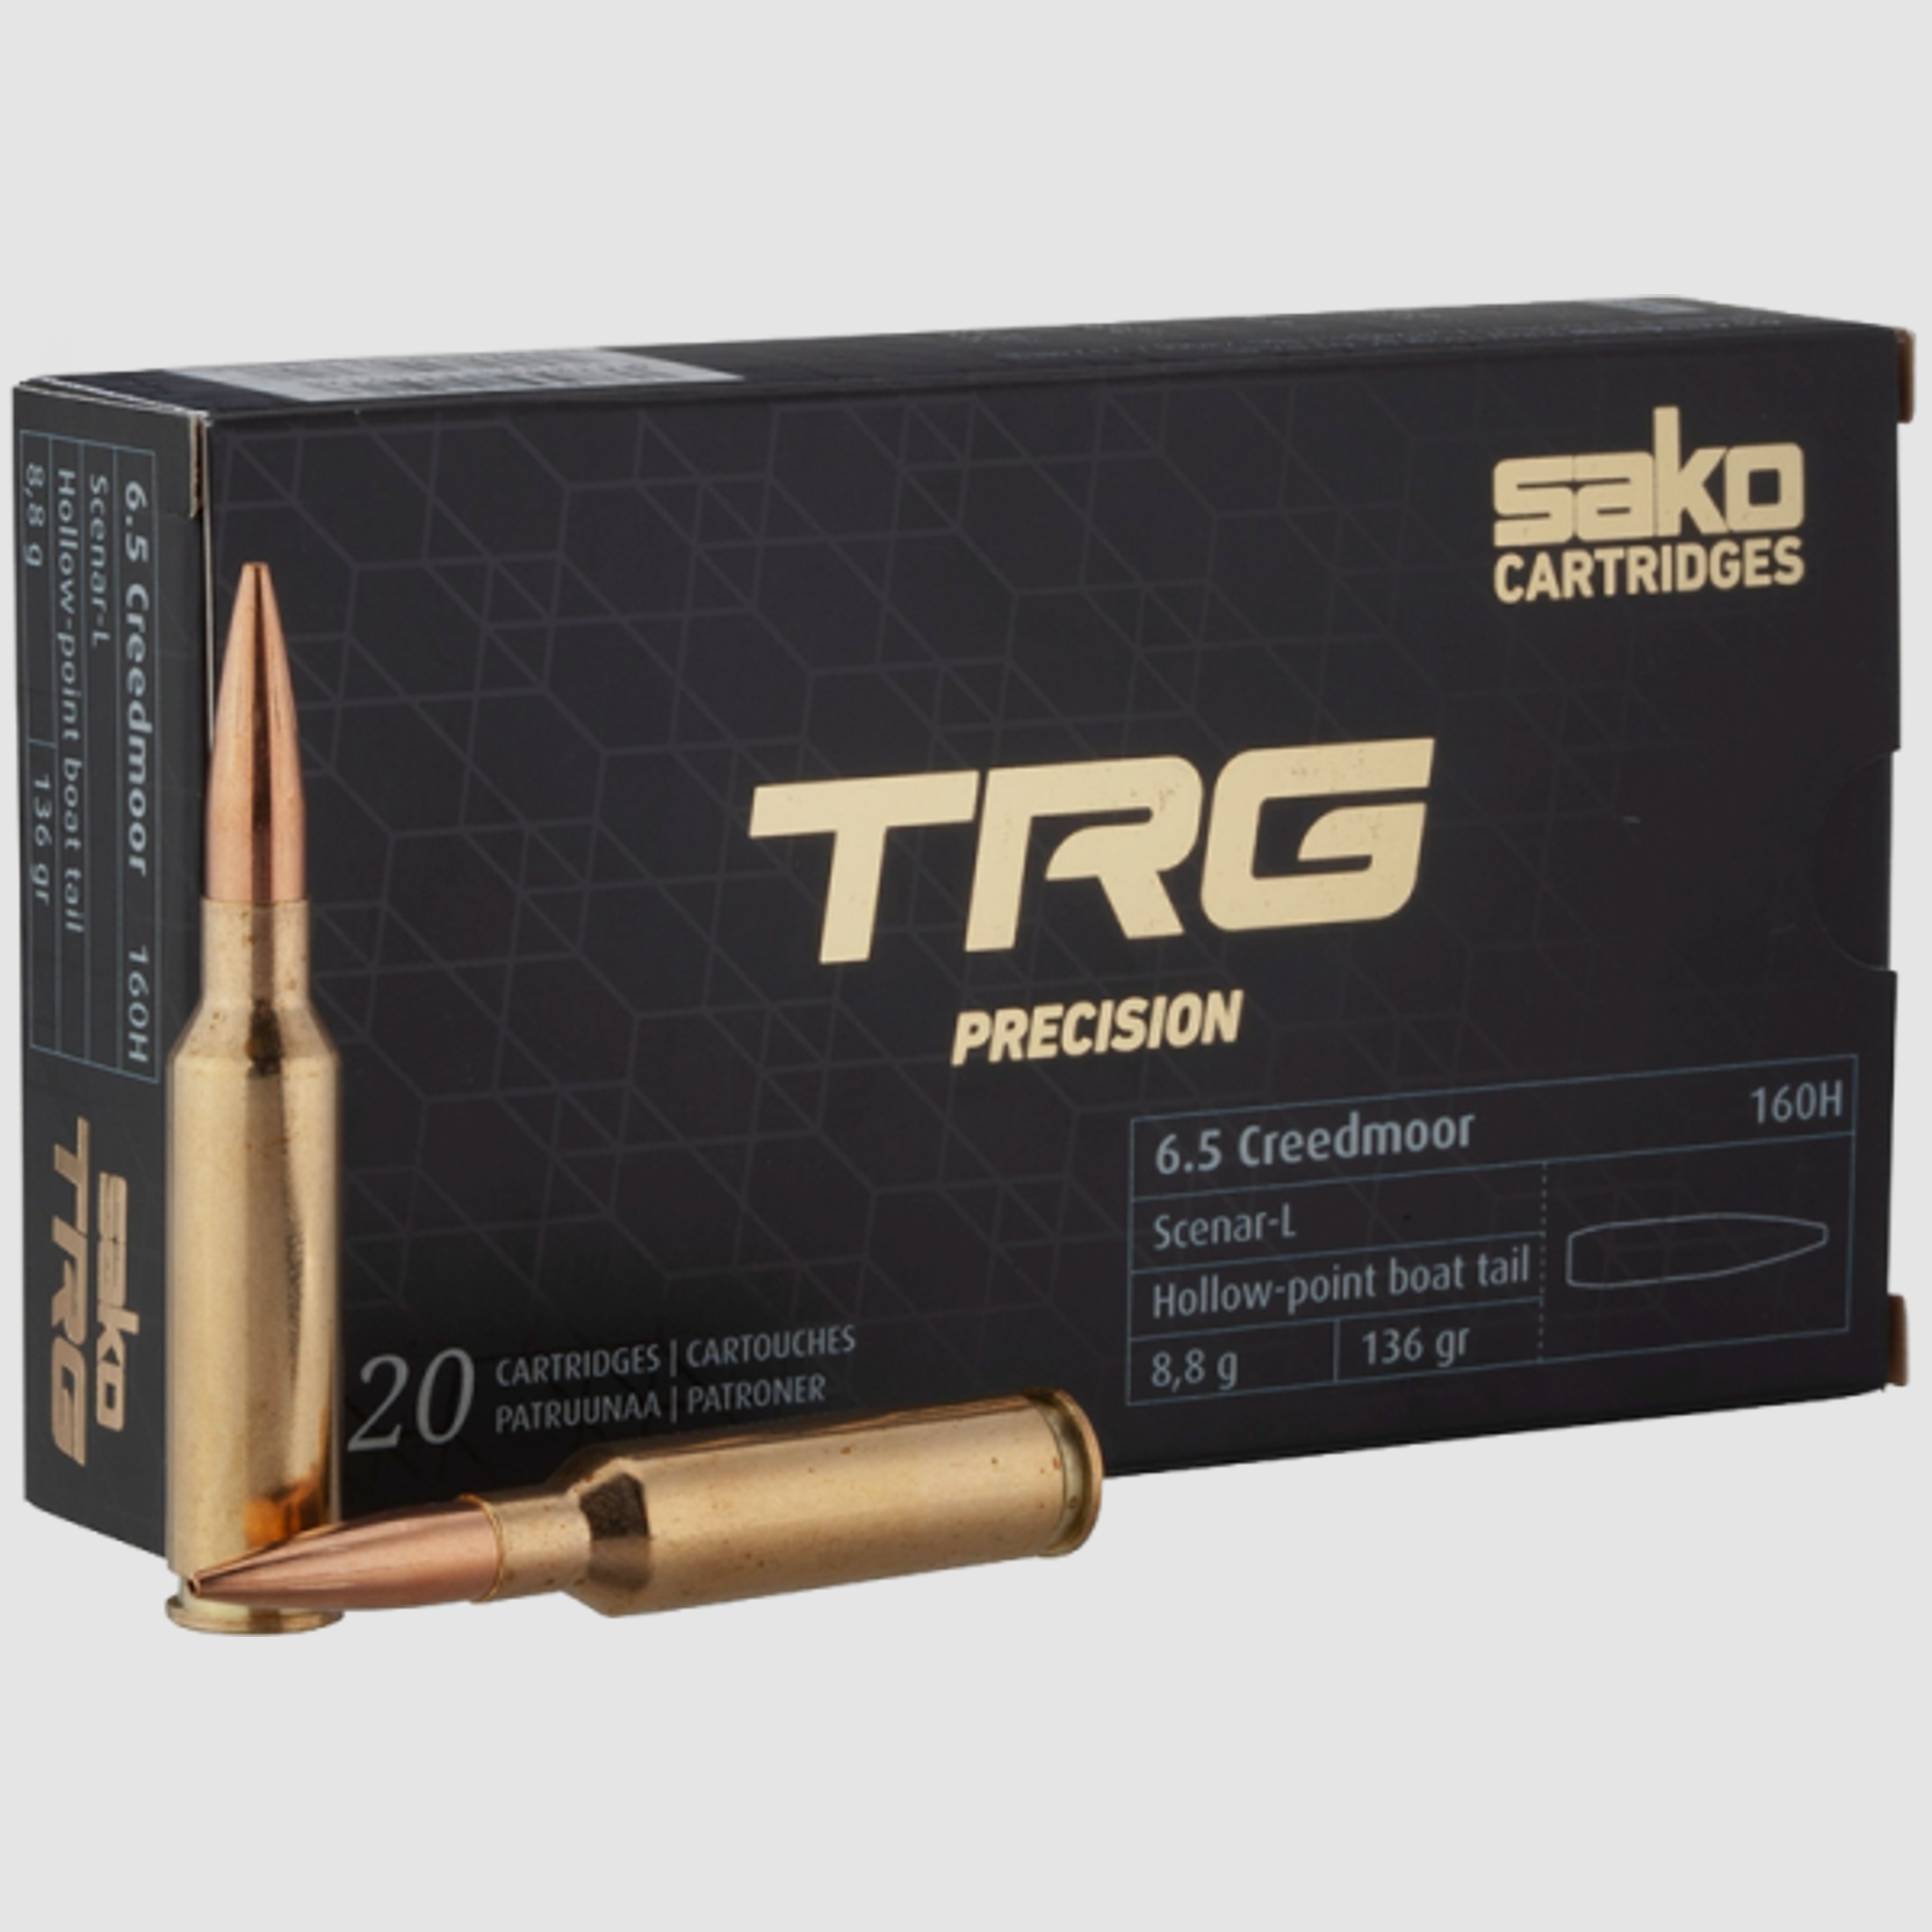 Sako TRG Precision 6,5mm Creedmoor 136 grs Büchsenpatronen